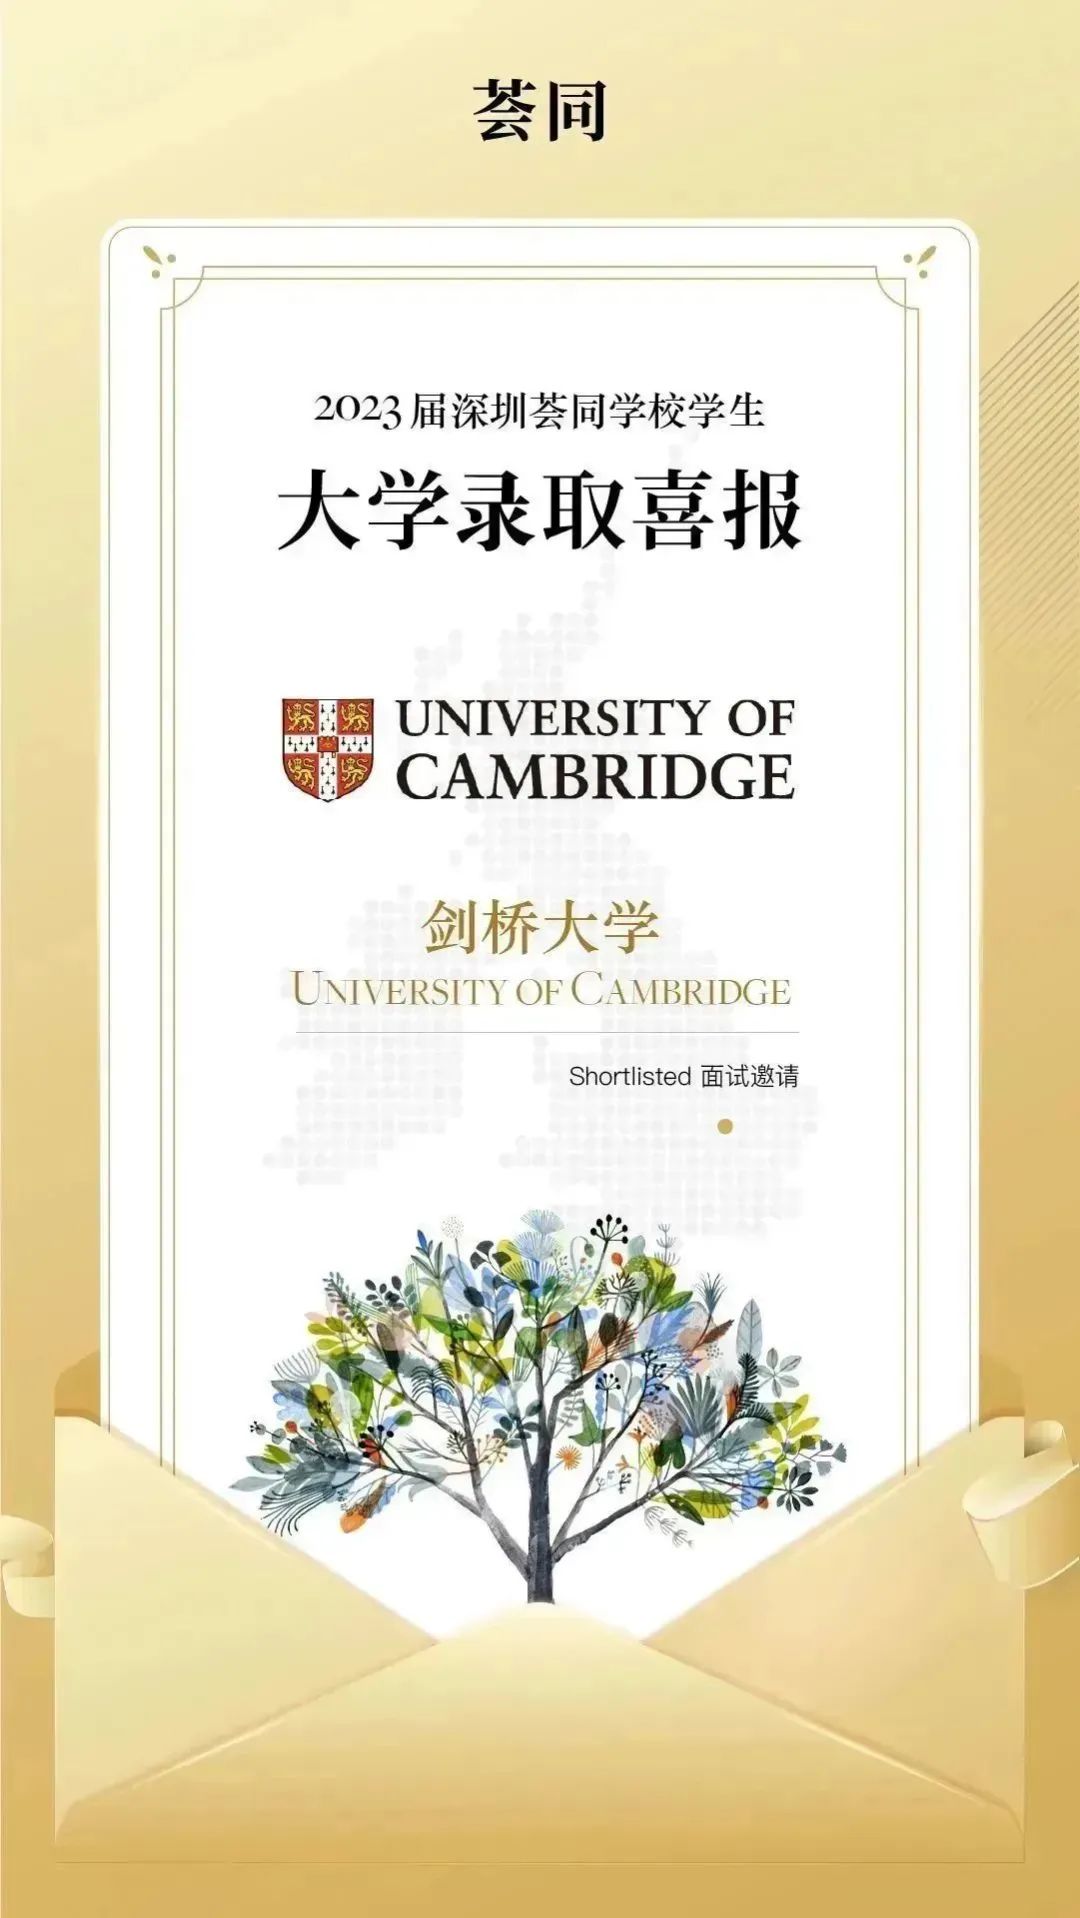 祝贺荟同学生获得剑桥大学、英国皇家音乐学院等多所院校面试邀请！